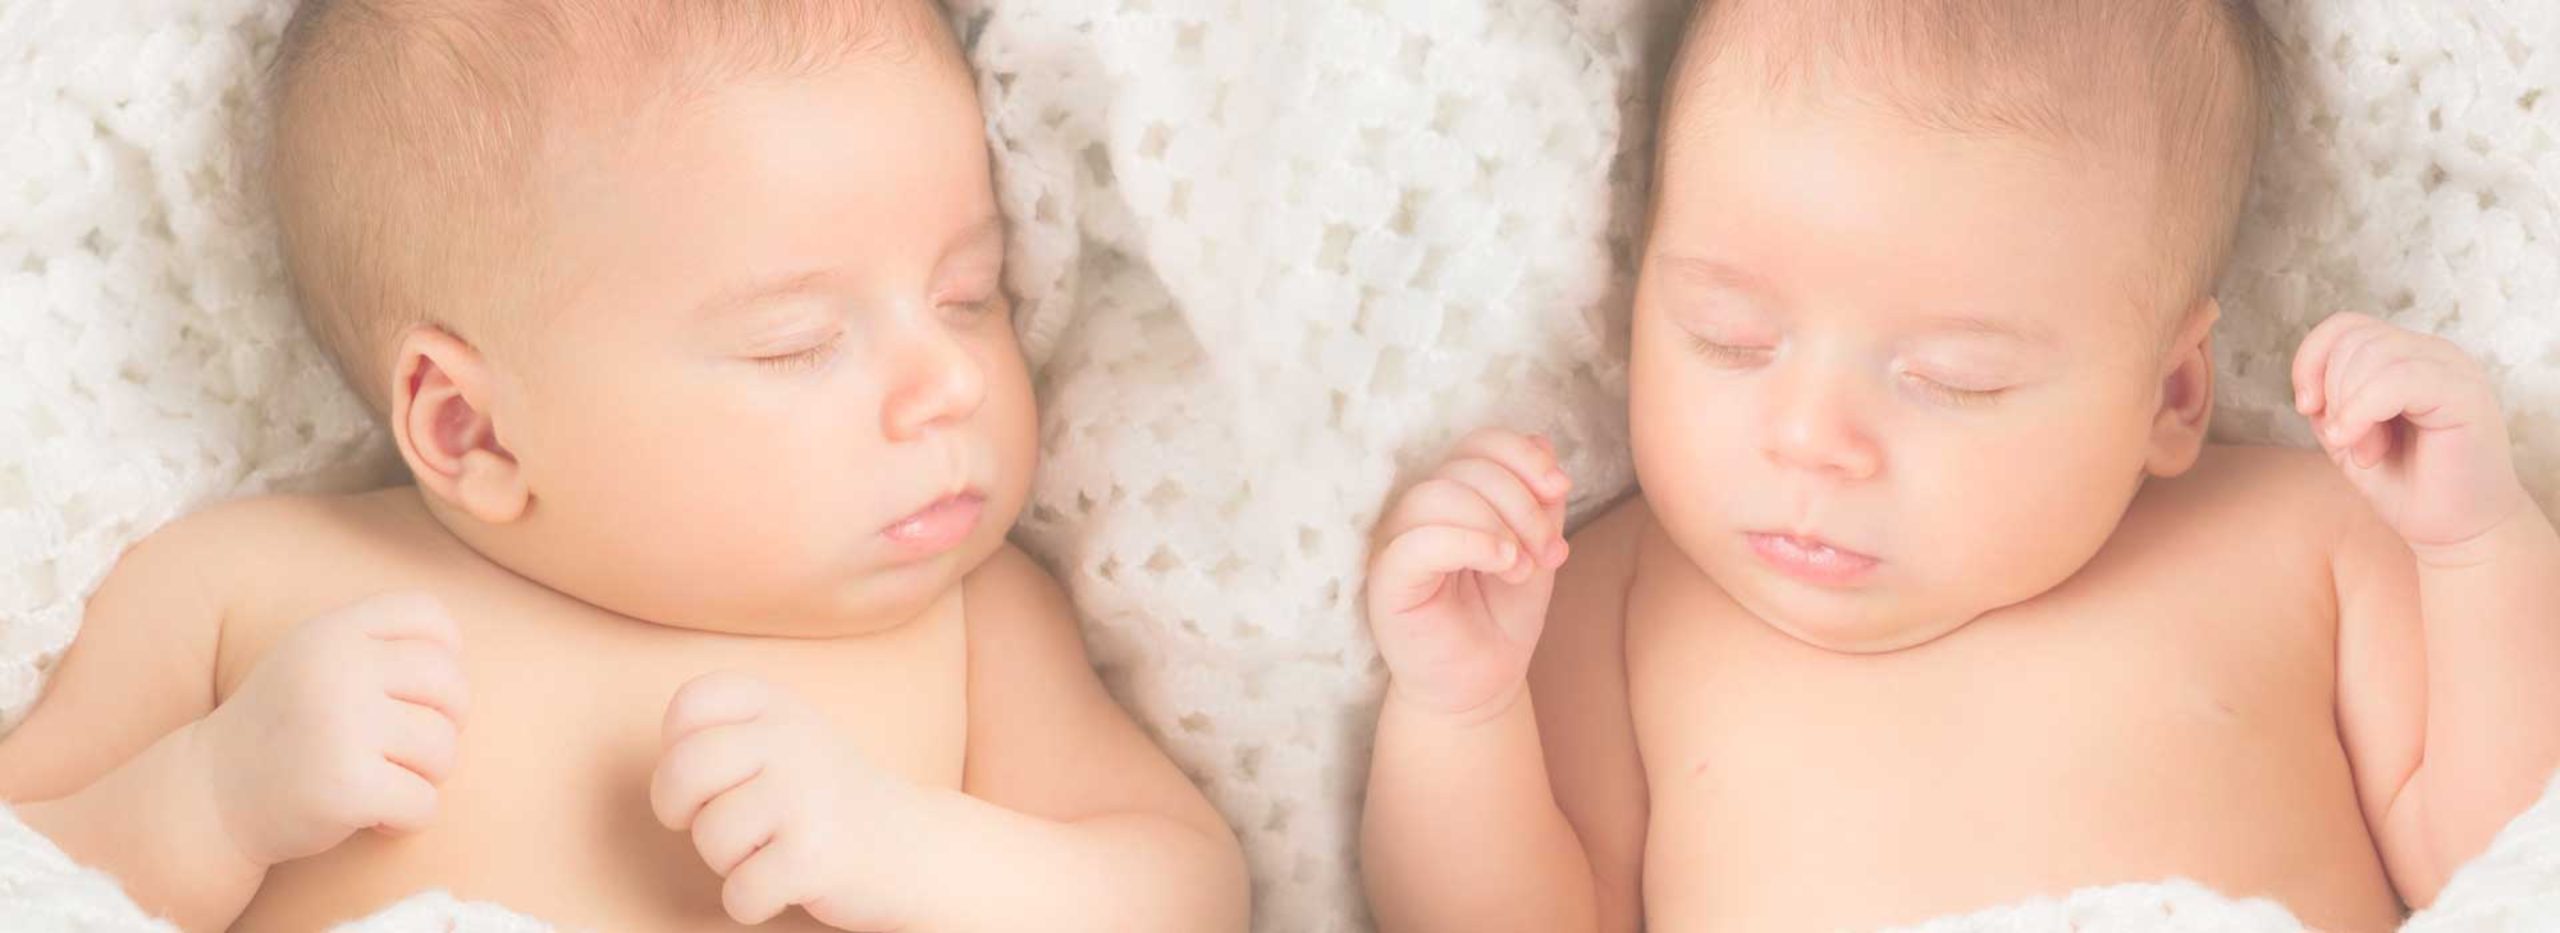 Äggdonation och surrogatmödraskap för ofrivilligt barnlösa och infertila